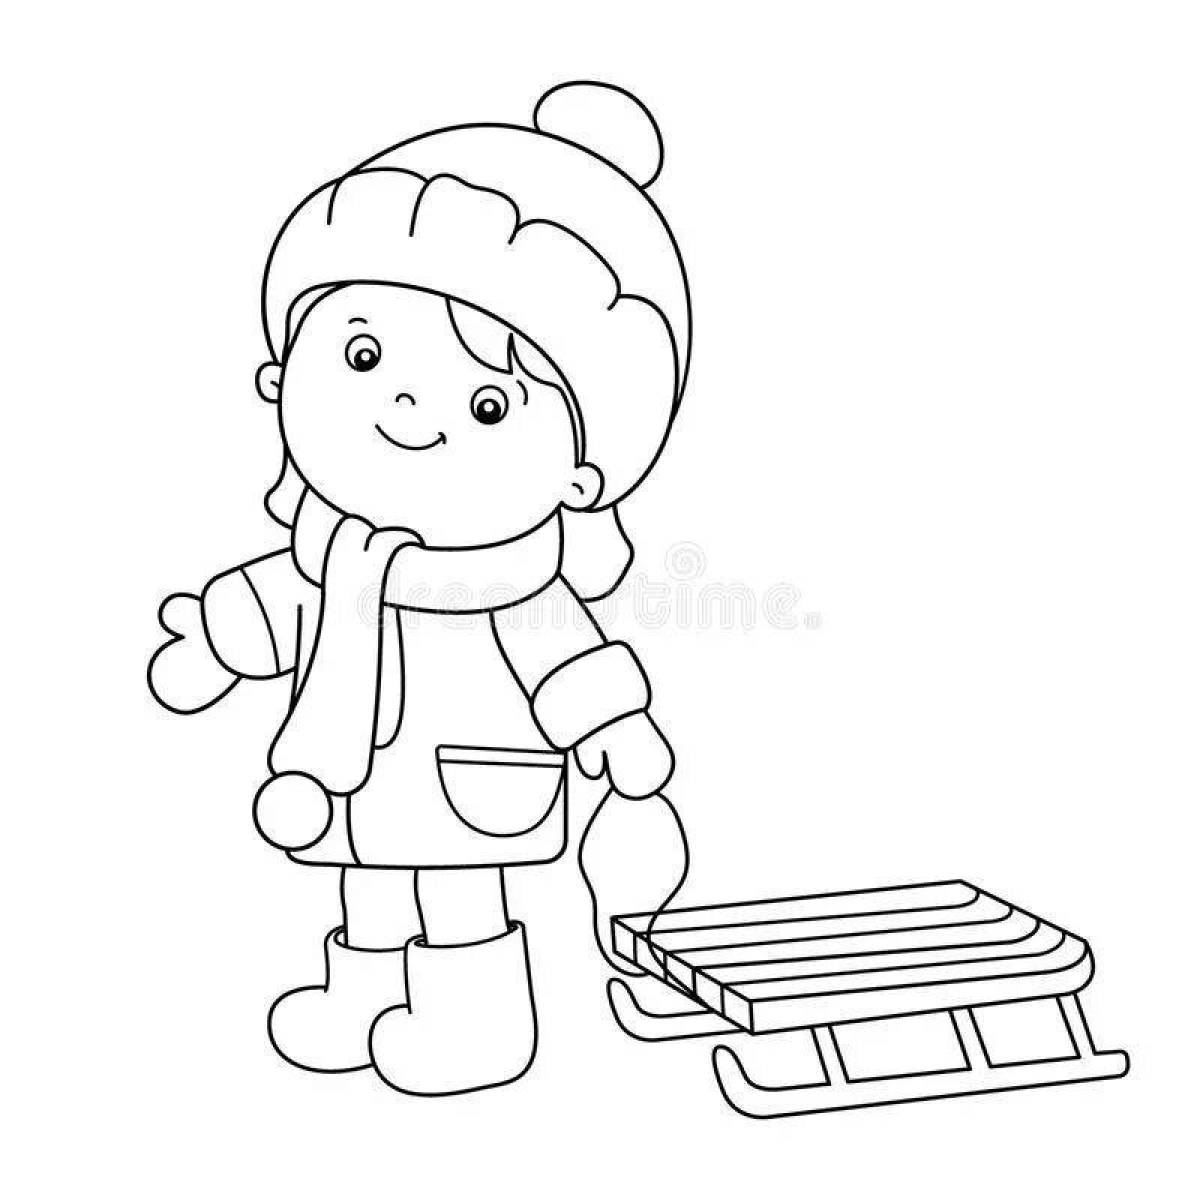 Удобная раскраска мальчик в зимней одежде